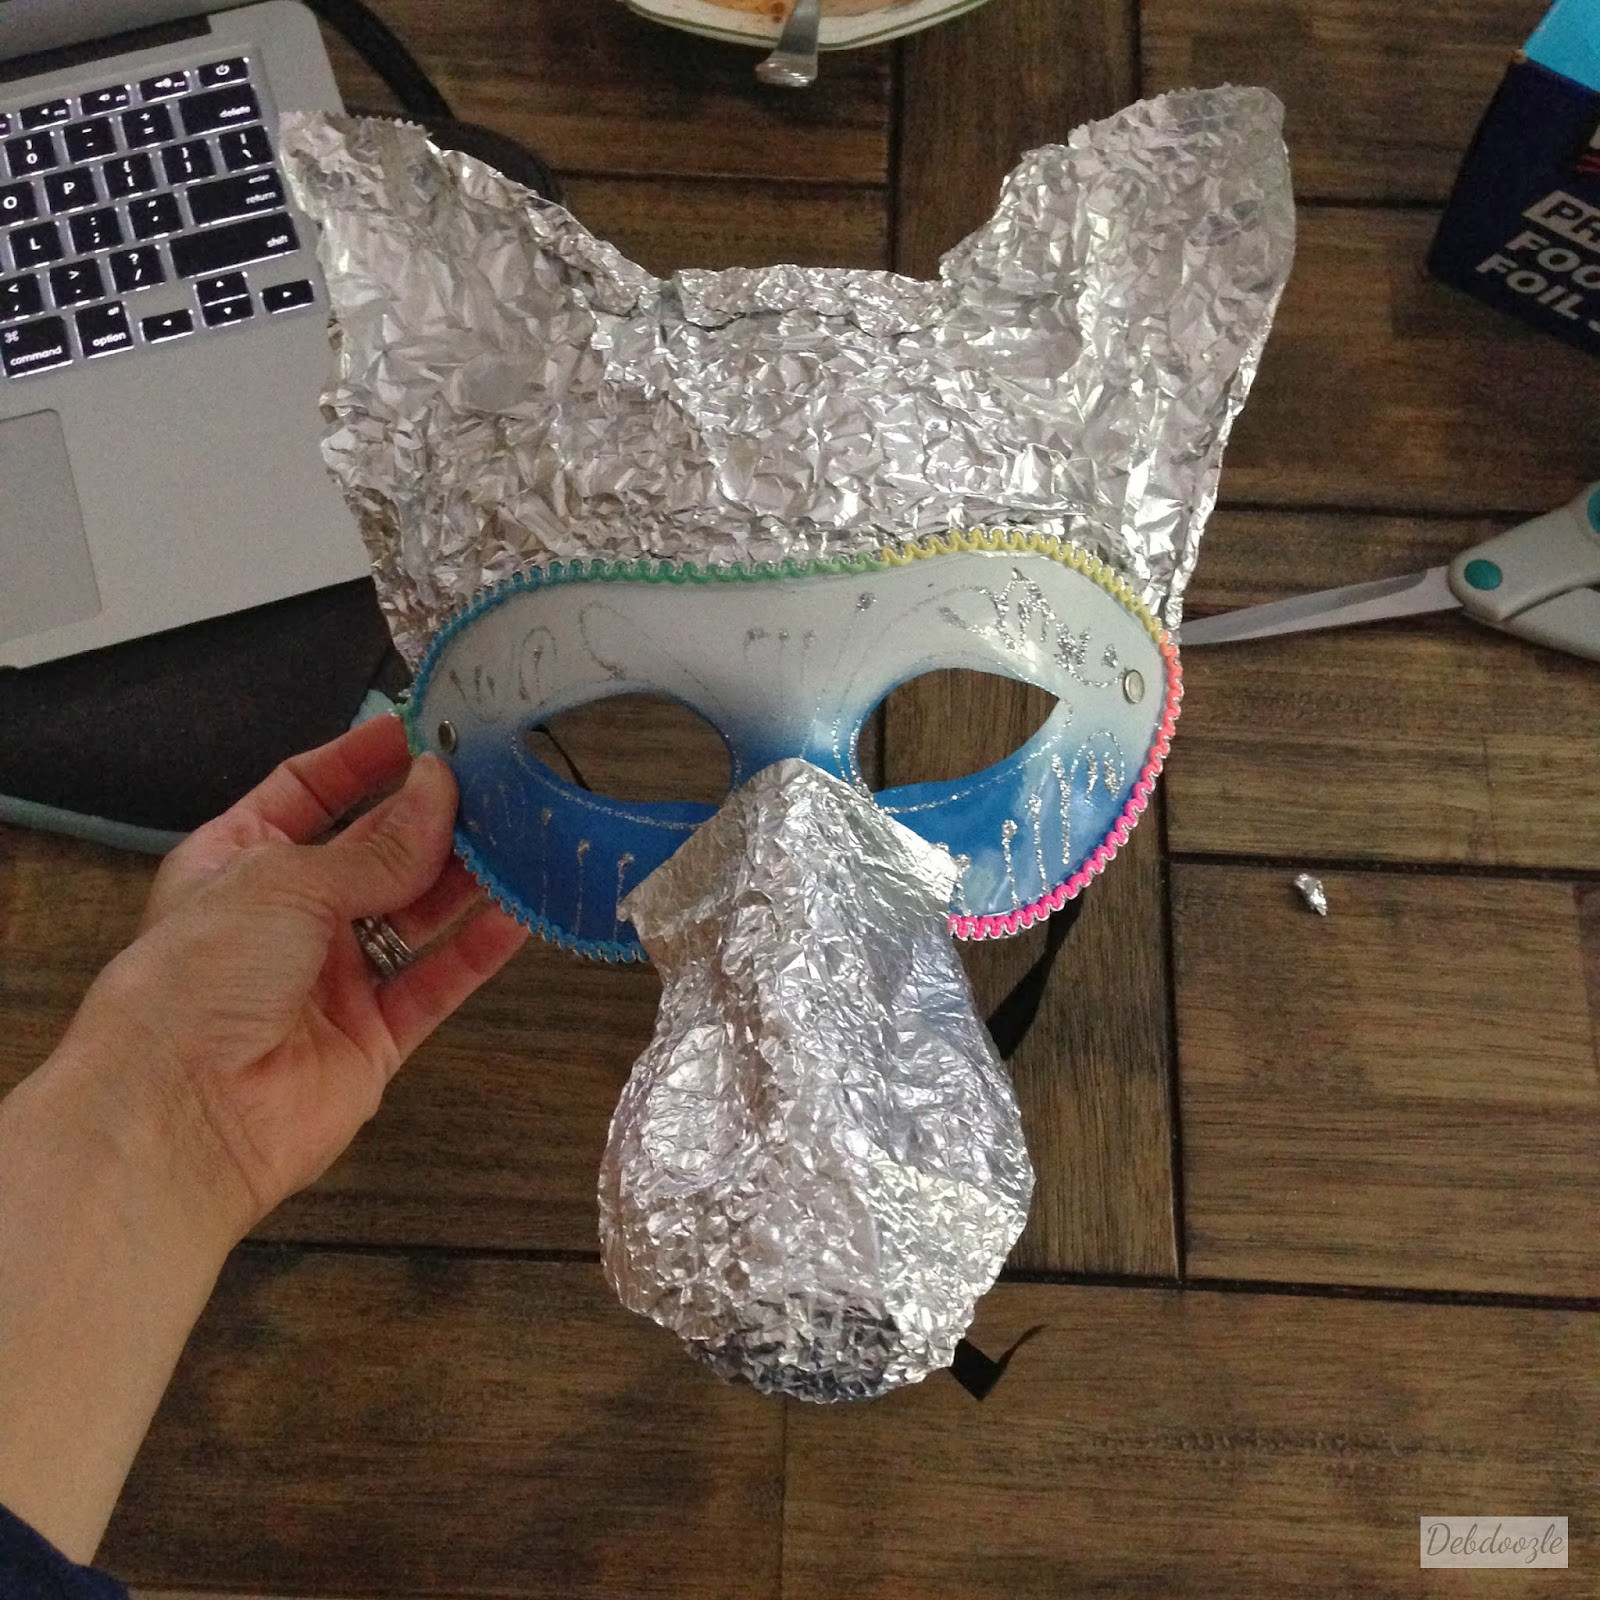 Best ideas about Paper Mache Mask DIY
. Save or Pin Debdoozle DIY Papier Mâché Paper Mache Anubis Jackal Mask Now.